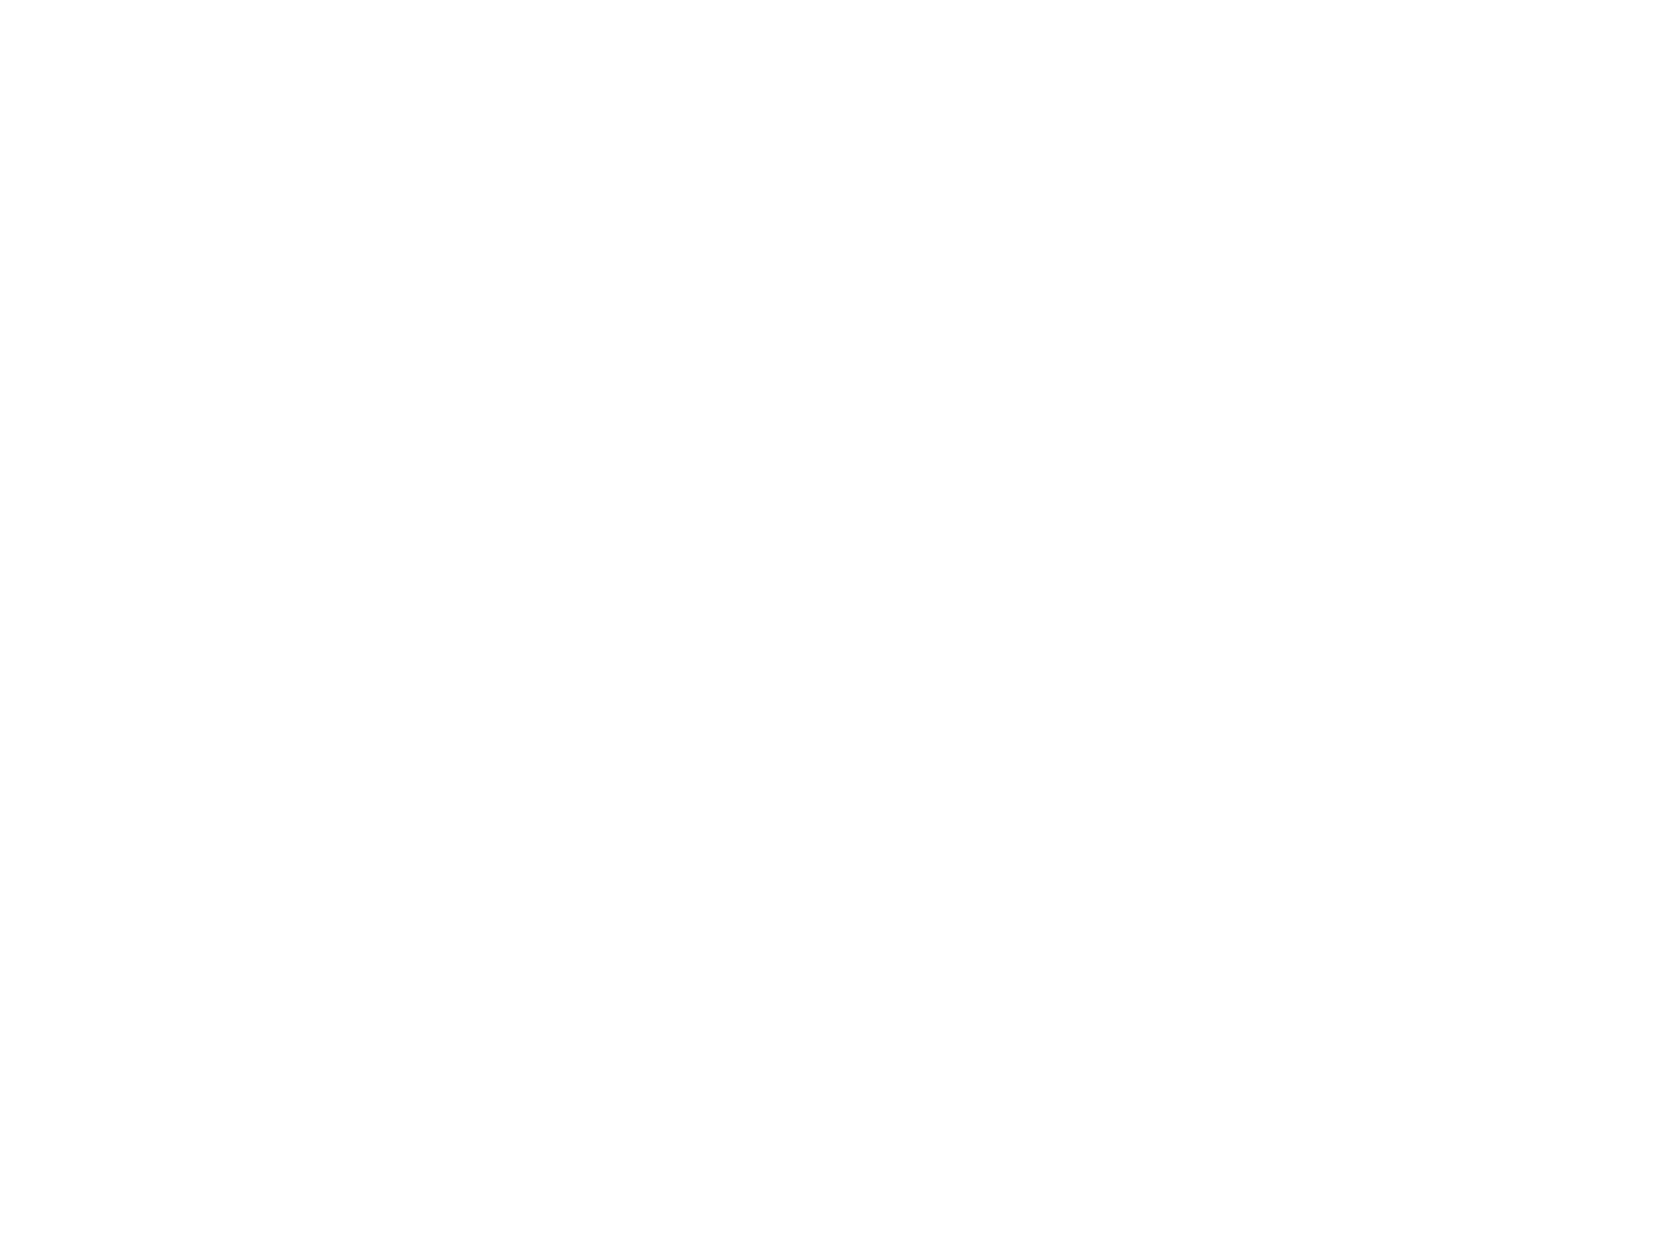 Георгий Ли Гирсу. В ожидании парохода. 1971. Музей изобразительных искусств г. Комсомольска-на-Амуре, Комсомольск-на-Амуре